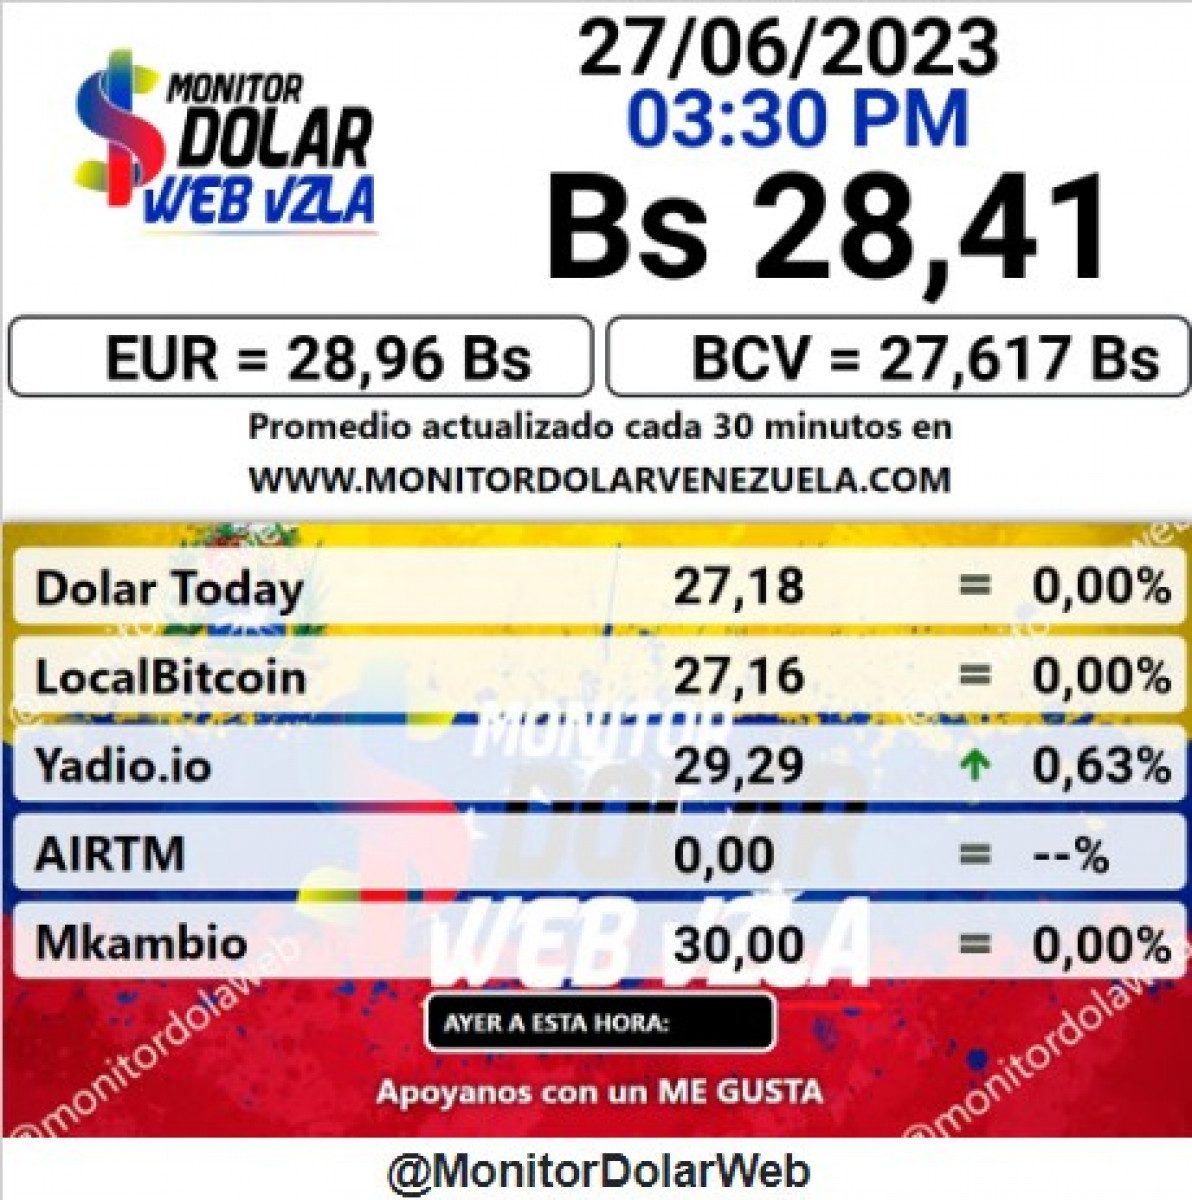 dolartoday en venezuela precio del dolar este martes 27 de junio de 2023 laverdaddemonagas.com monitor1